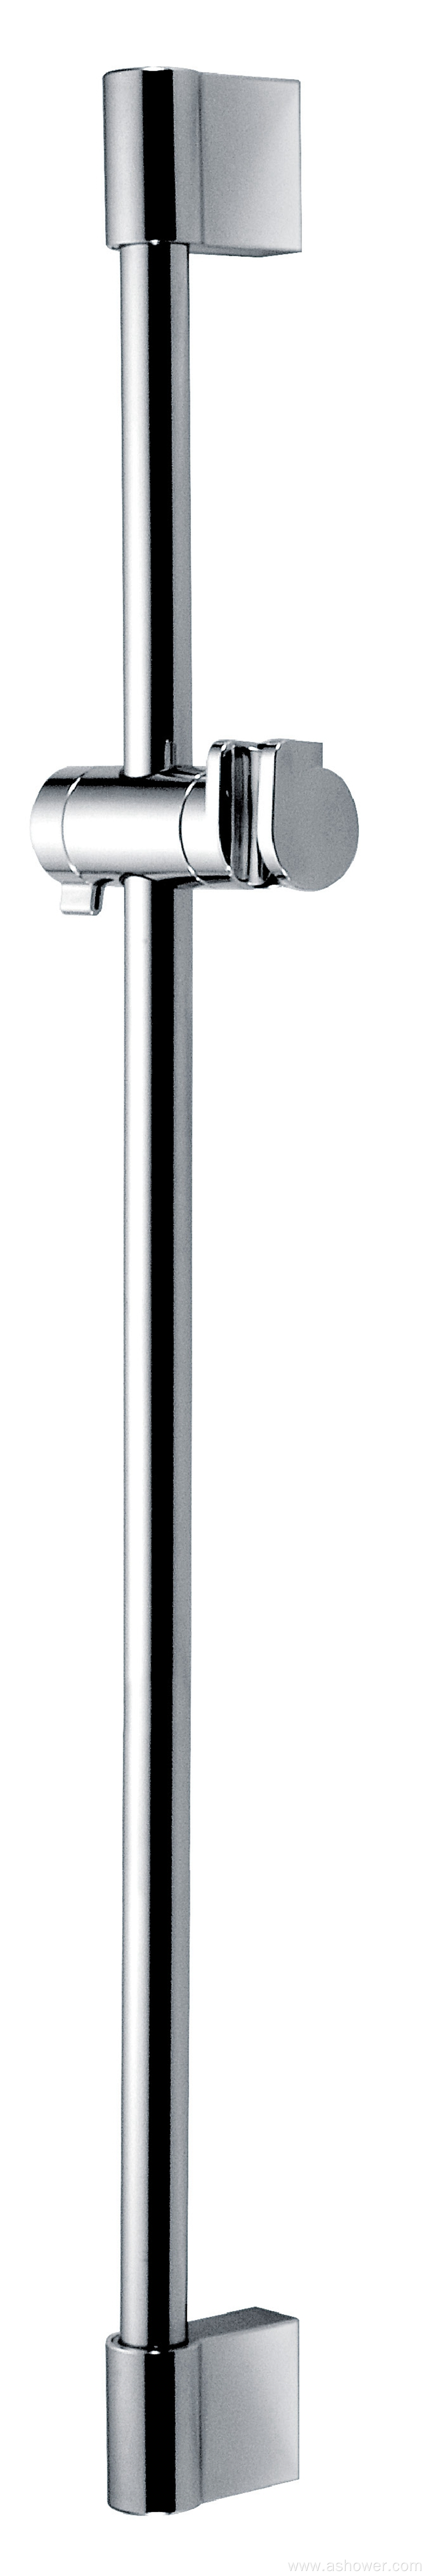 Stainless Steel shower slide bar